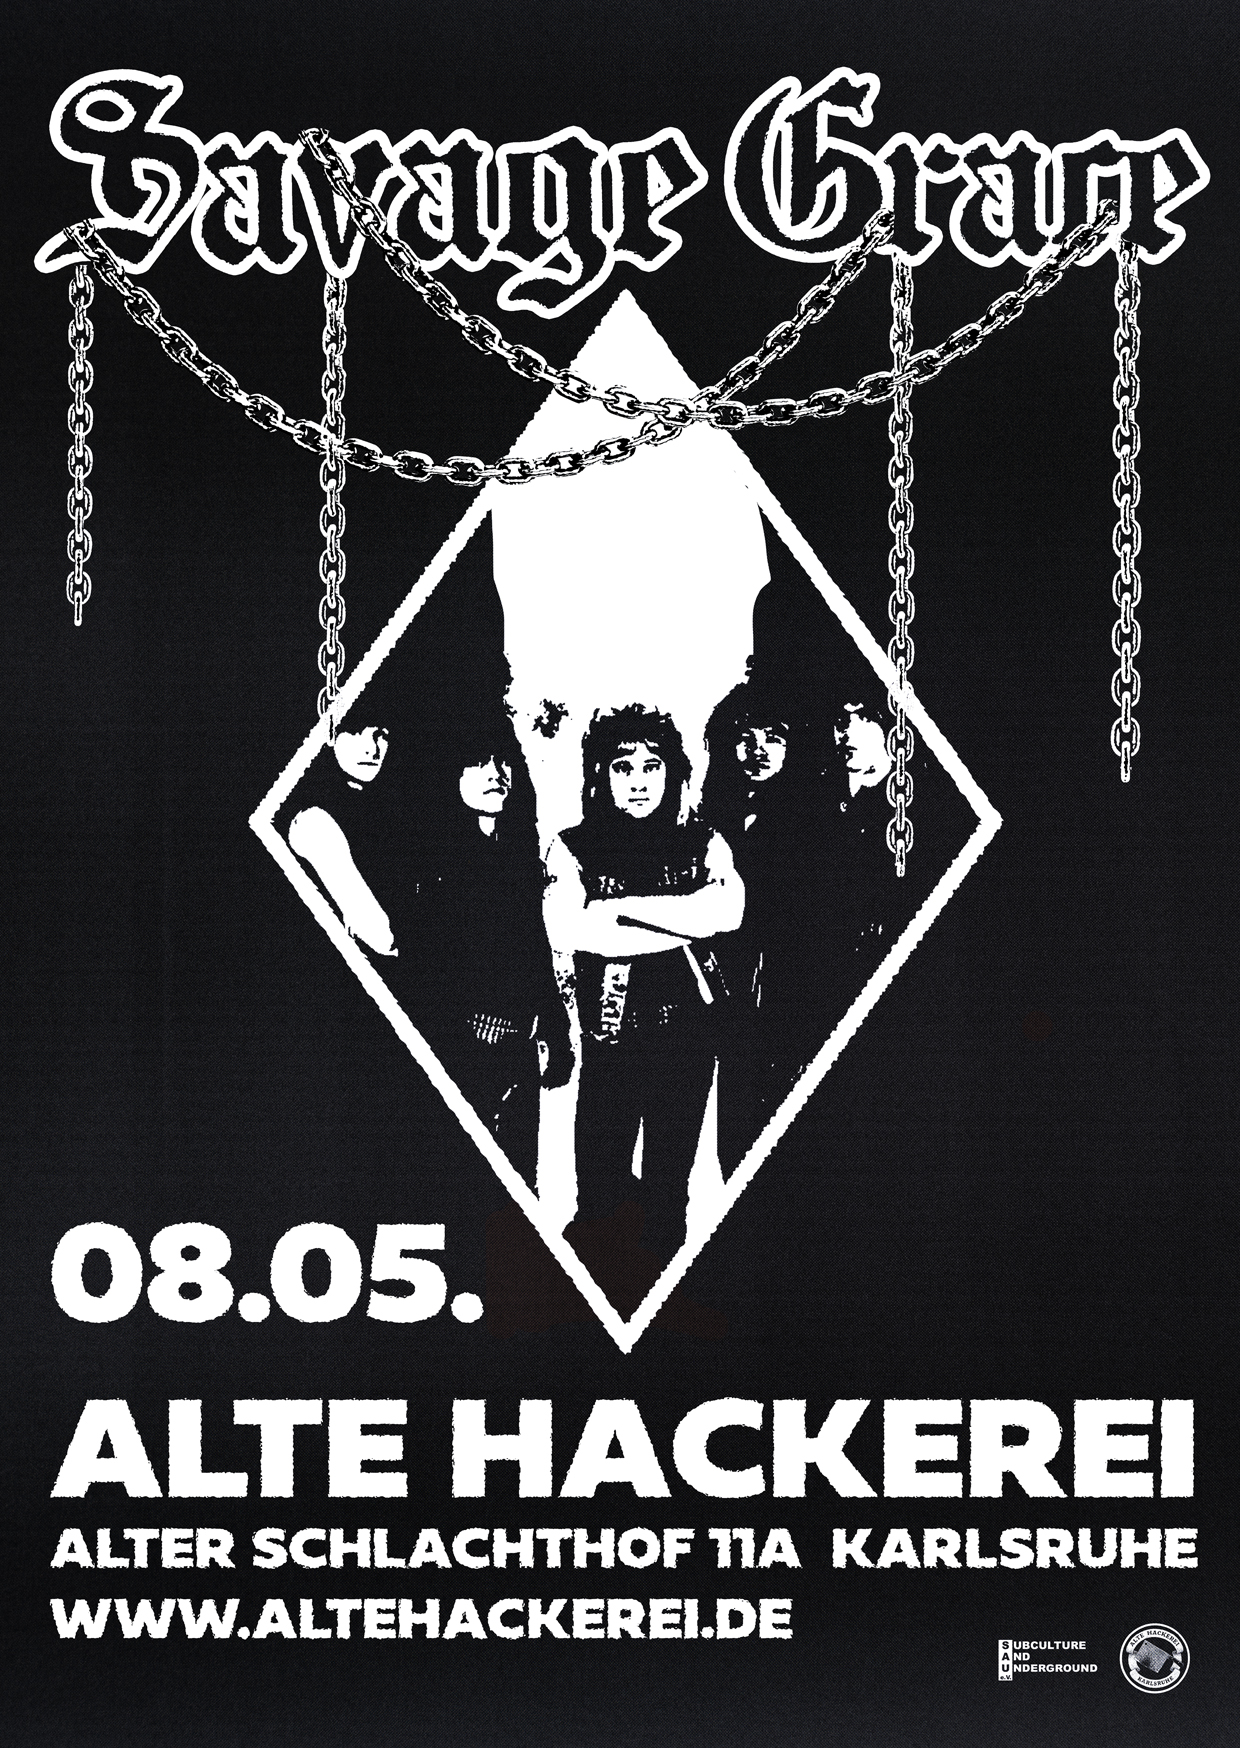 Jahresfest mit Lombego Surfers & Lit Villains-Konzert in der Alten Hackerei in Karlsruhe